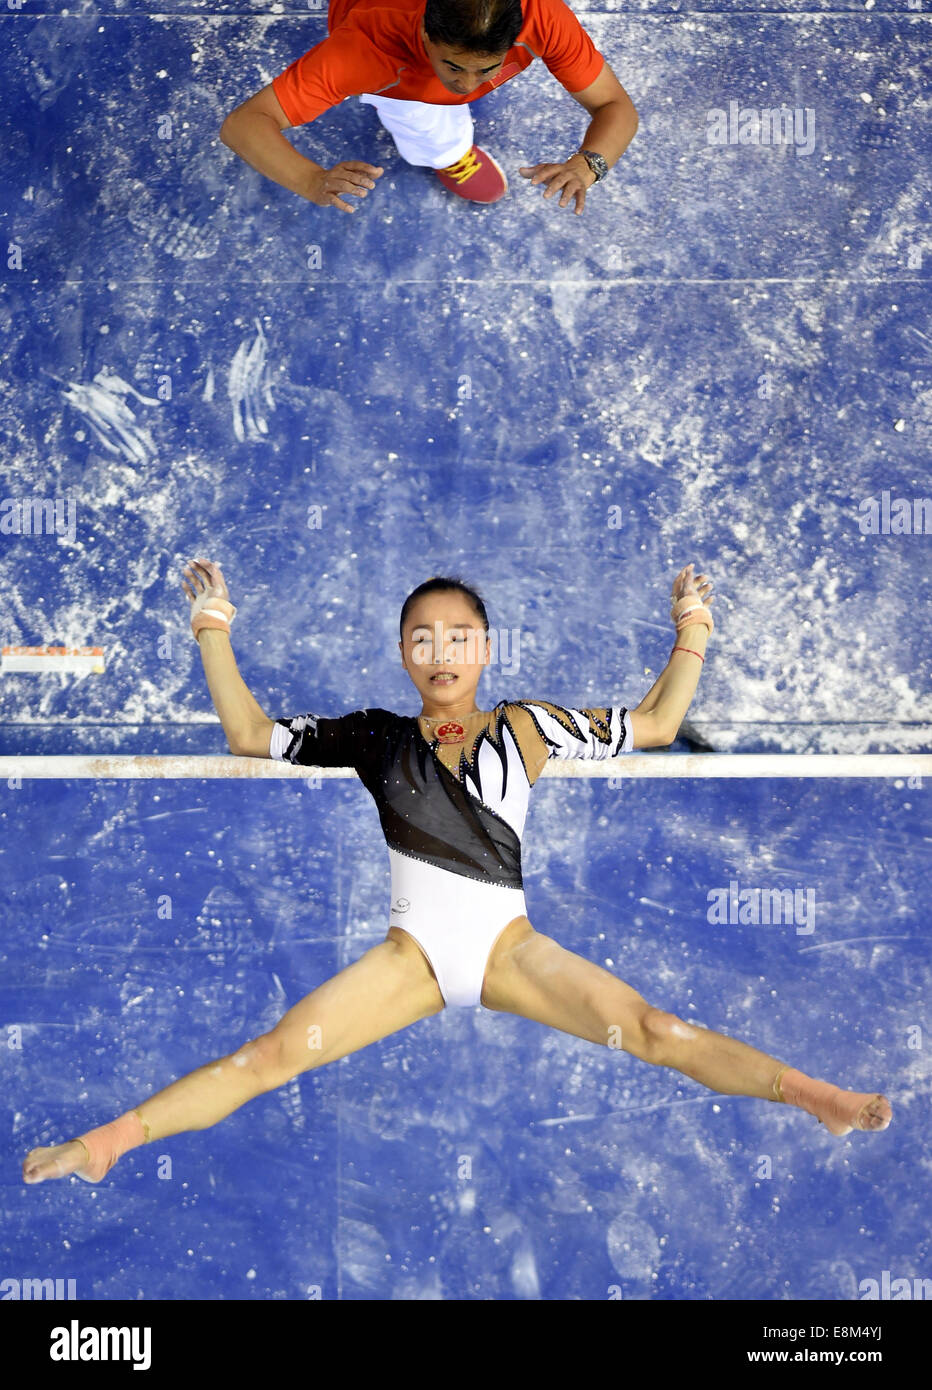 Nanning, Chine, région autonome Zhuang du Guangxi. 10 Oct, 2014. Le gymnaste chinois Yao Jinnan effectue sur les barres lors de la féministe tout autour de la 45e finale des Championnats du monde de gymnastique à Nanning, capitale de la Chine du Sud, région autonome Zhuang du Guangxi, le 10 octobre 2014. Yao Jinnan classée cinquième dans la finale. (Xinhua/Wang Yuguo) (djj) Banque D'Images